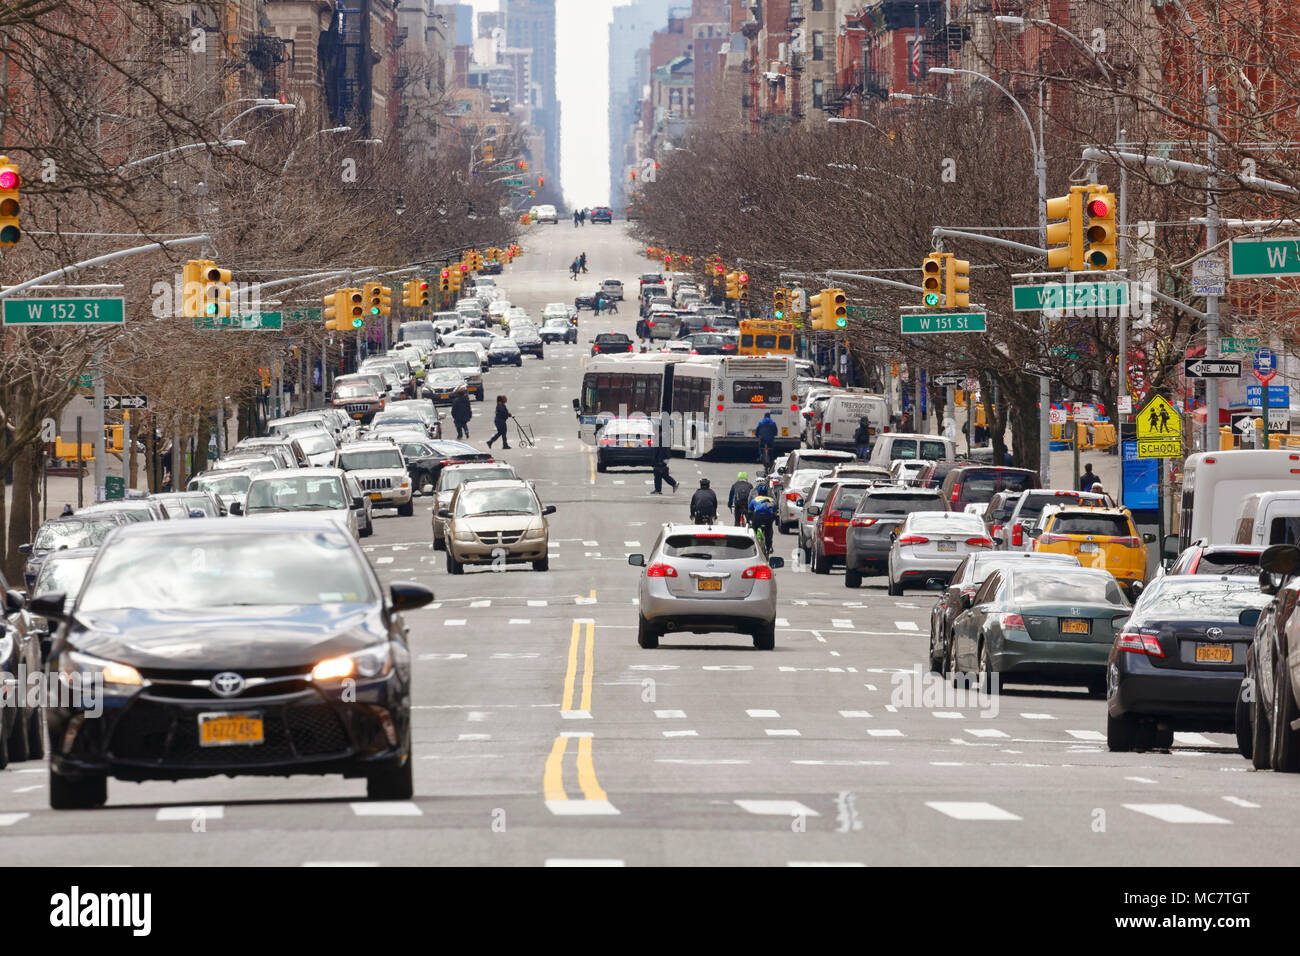 Was scheint eine endlose Straße in einem generischen Stadt, Verkehr, Transport und der Betonwüste. Gedreht wurde in New York. Stockfoto